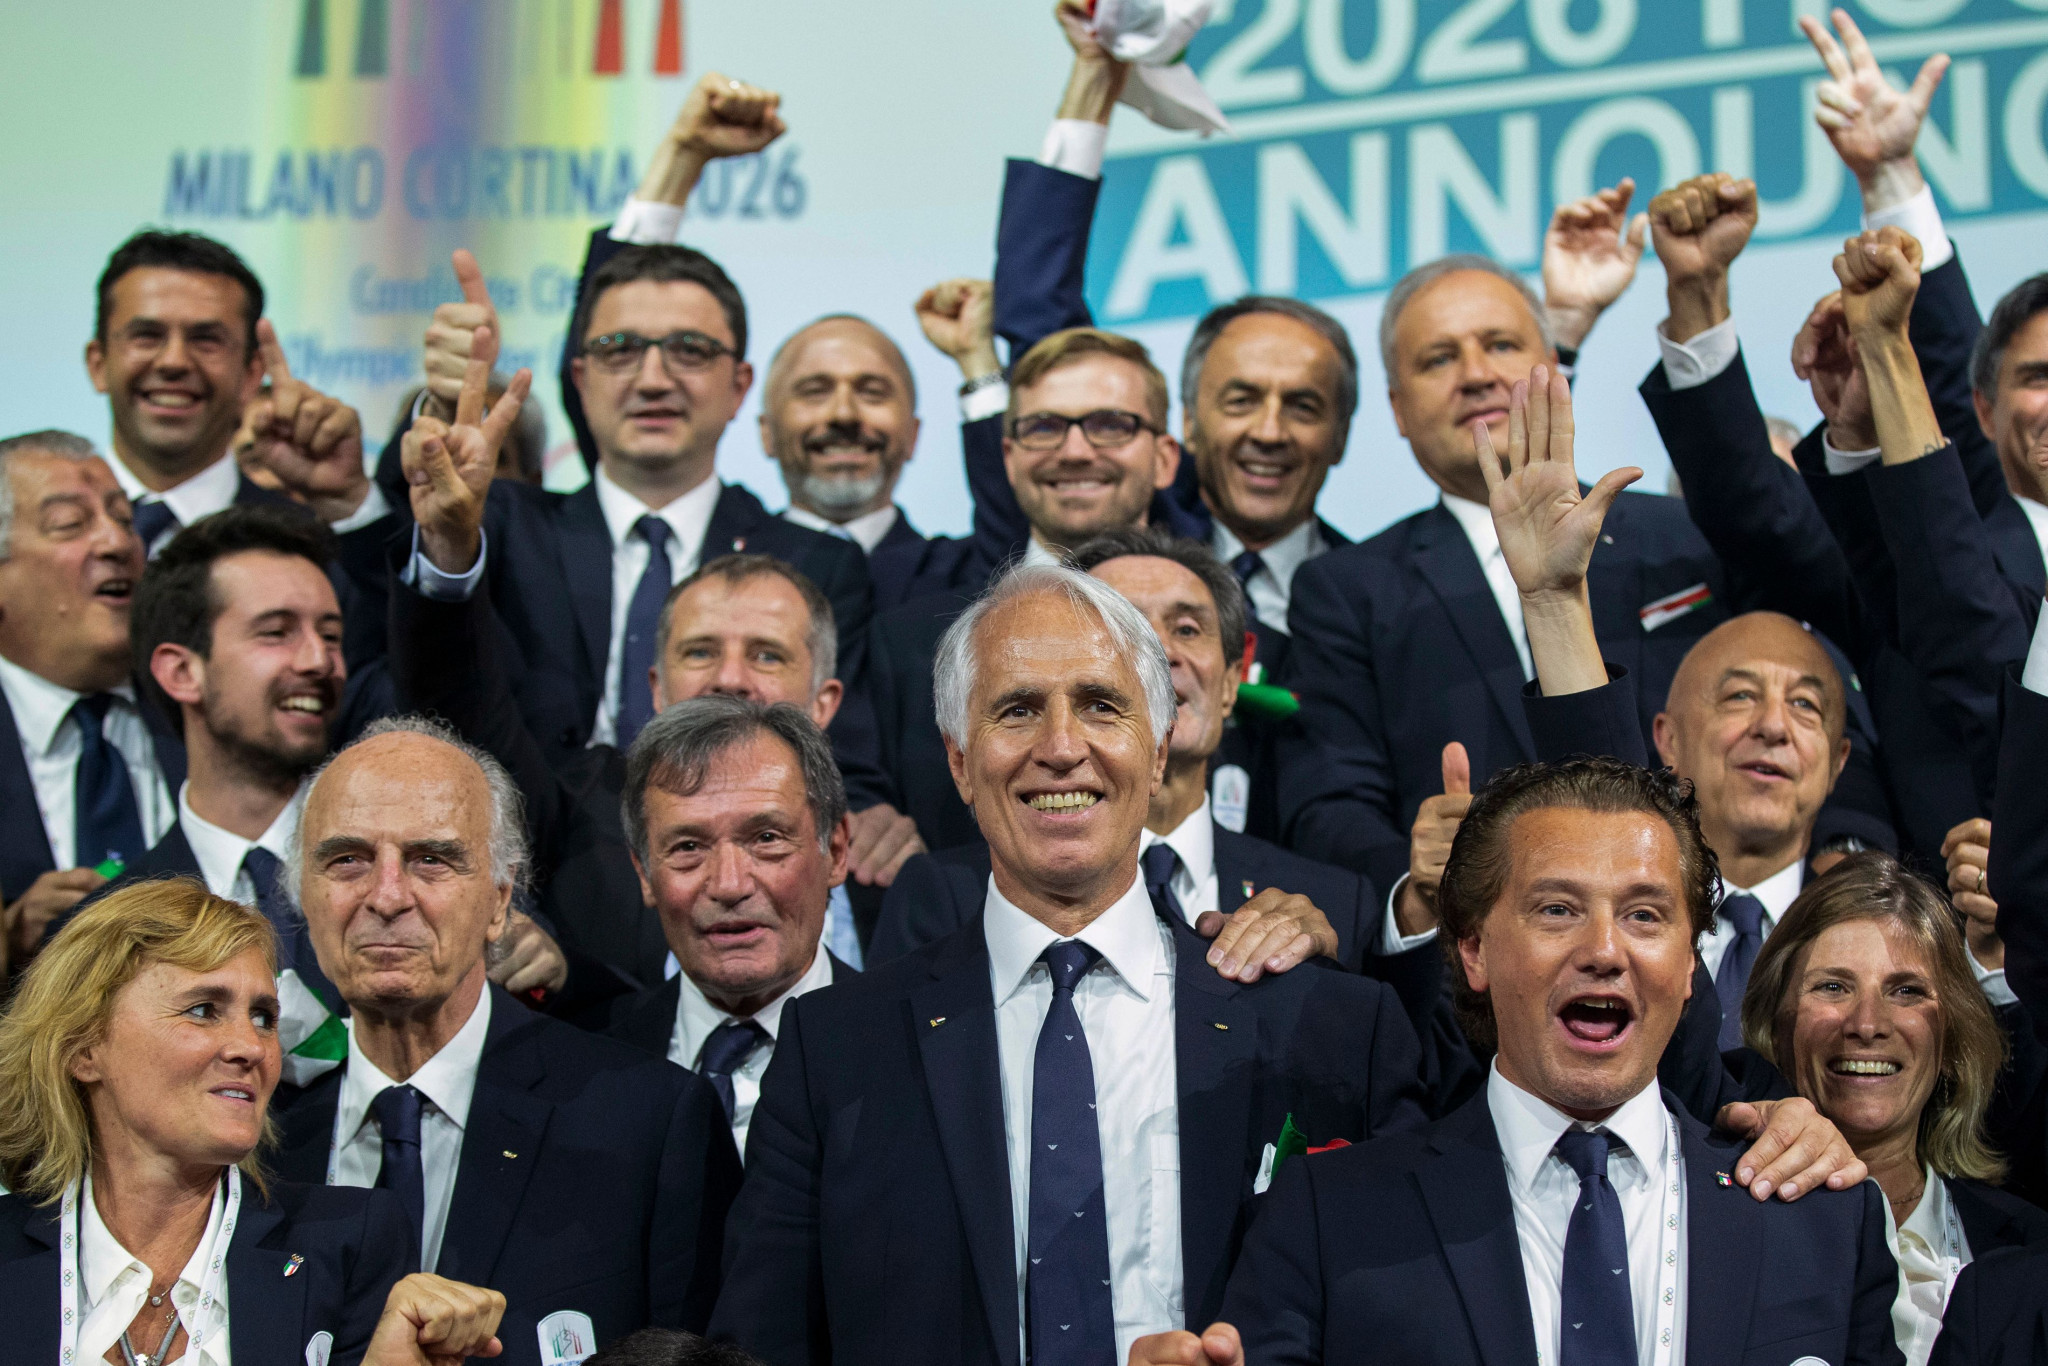 Malagò hails "fantastic team" as Milan Cortina 2026 President praises crucial political support in successful bid